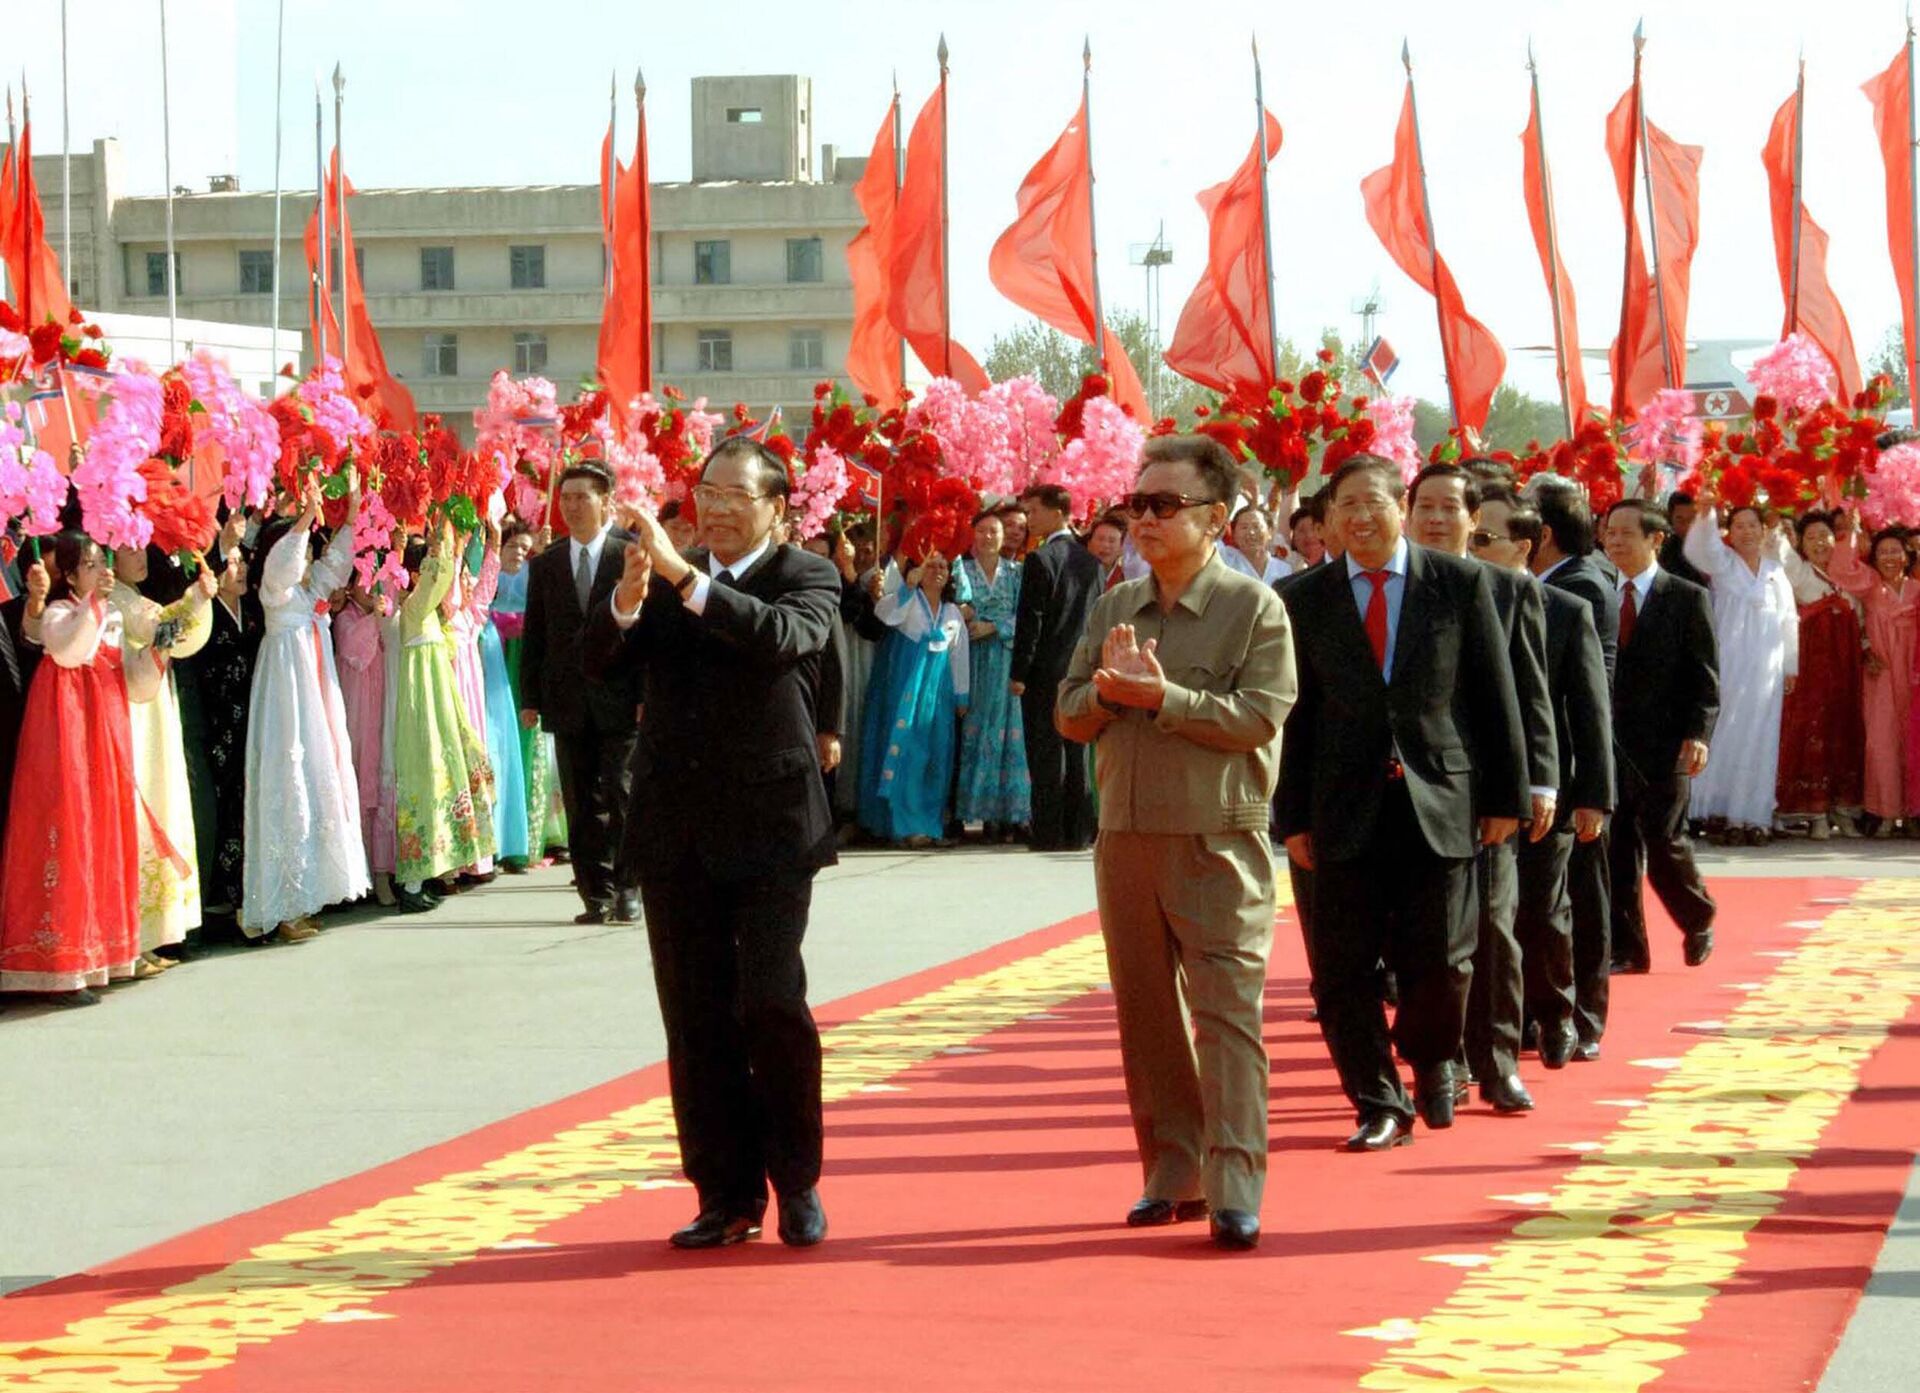 Lãnh đạo Đảng Cộng sản Việt Nam Nông Đức Mạnh chào chủ tịch Bắc Triều Tiên Kim Jong Il tại sân bay Bình Nhưỡng ngày 16/10/2007. - Sputnik Việt Nam, 1920, 07.05.2022